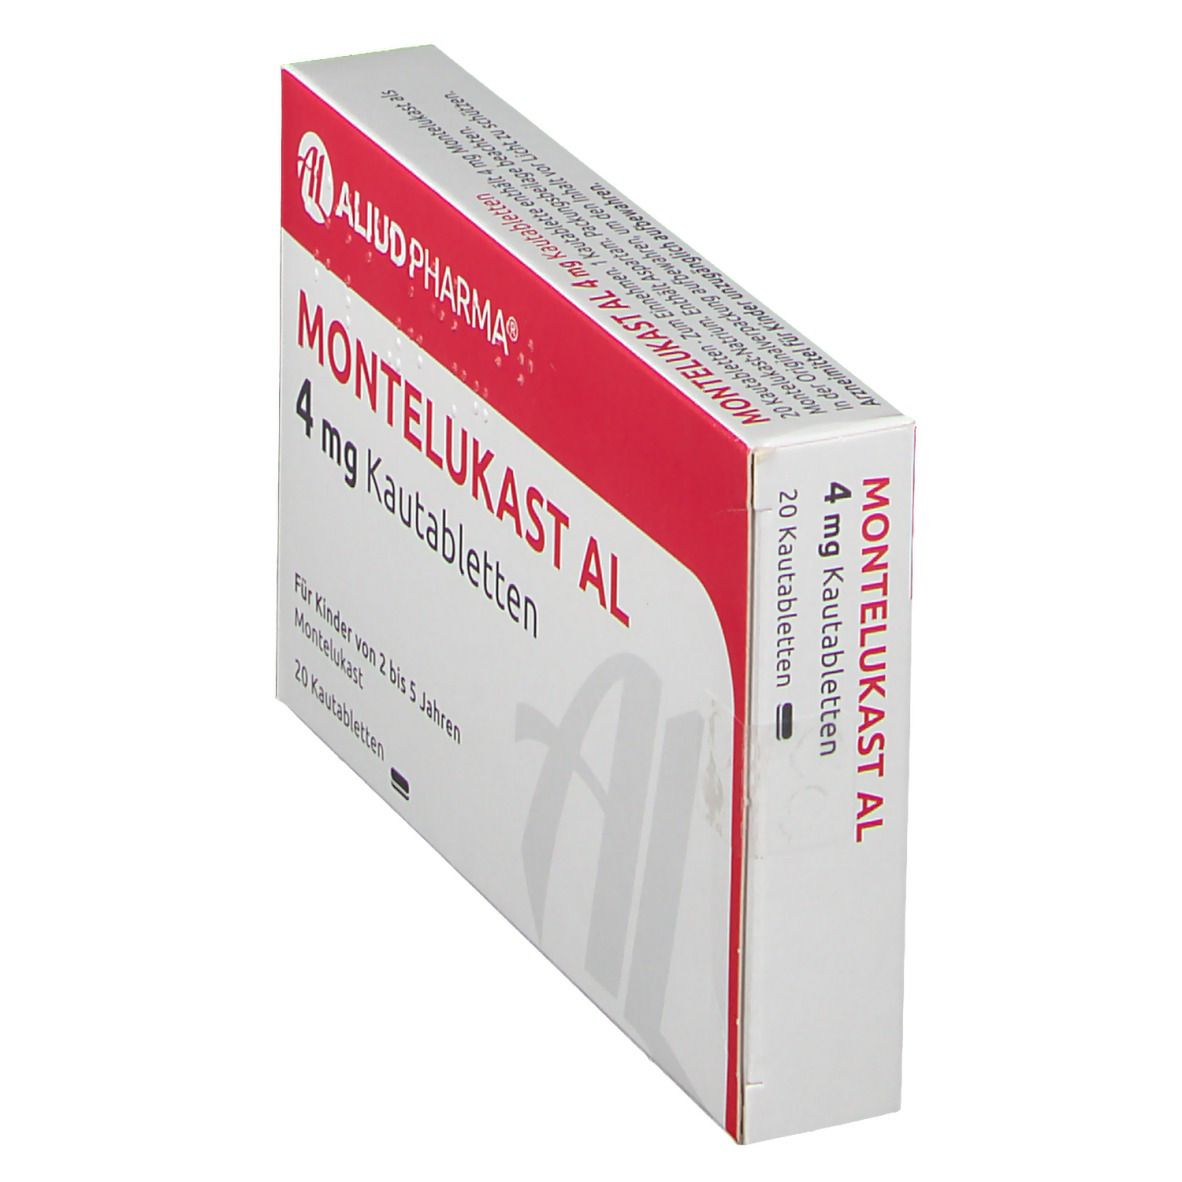 Montelukast AL 4 mg